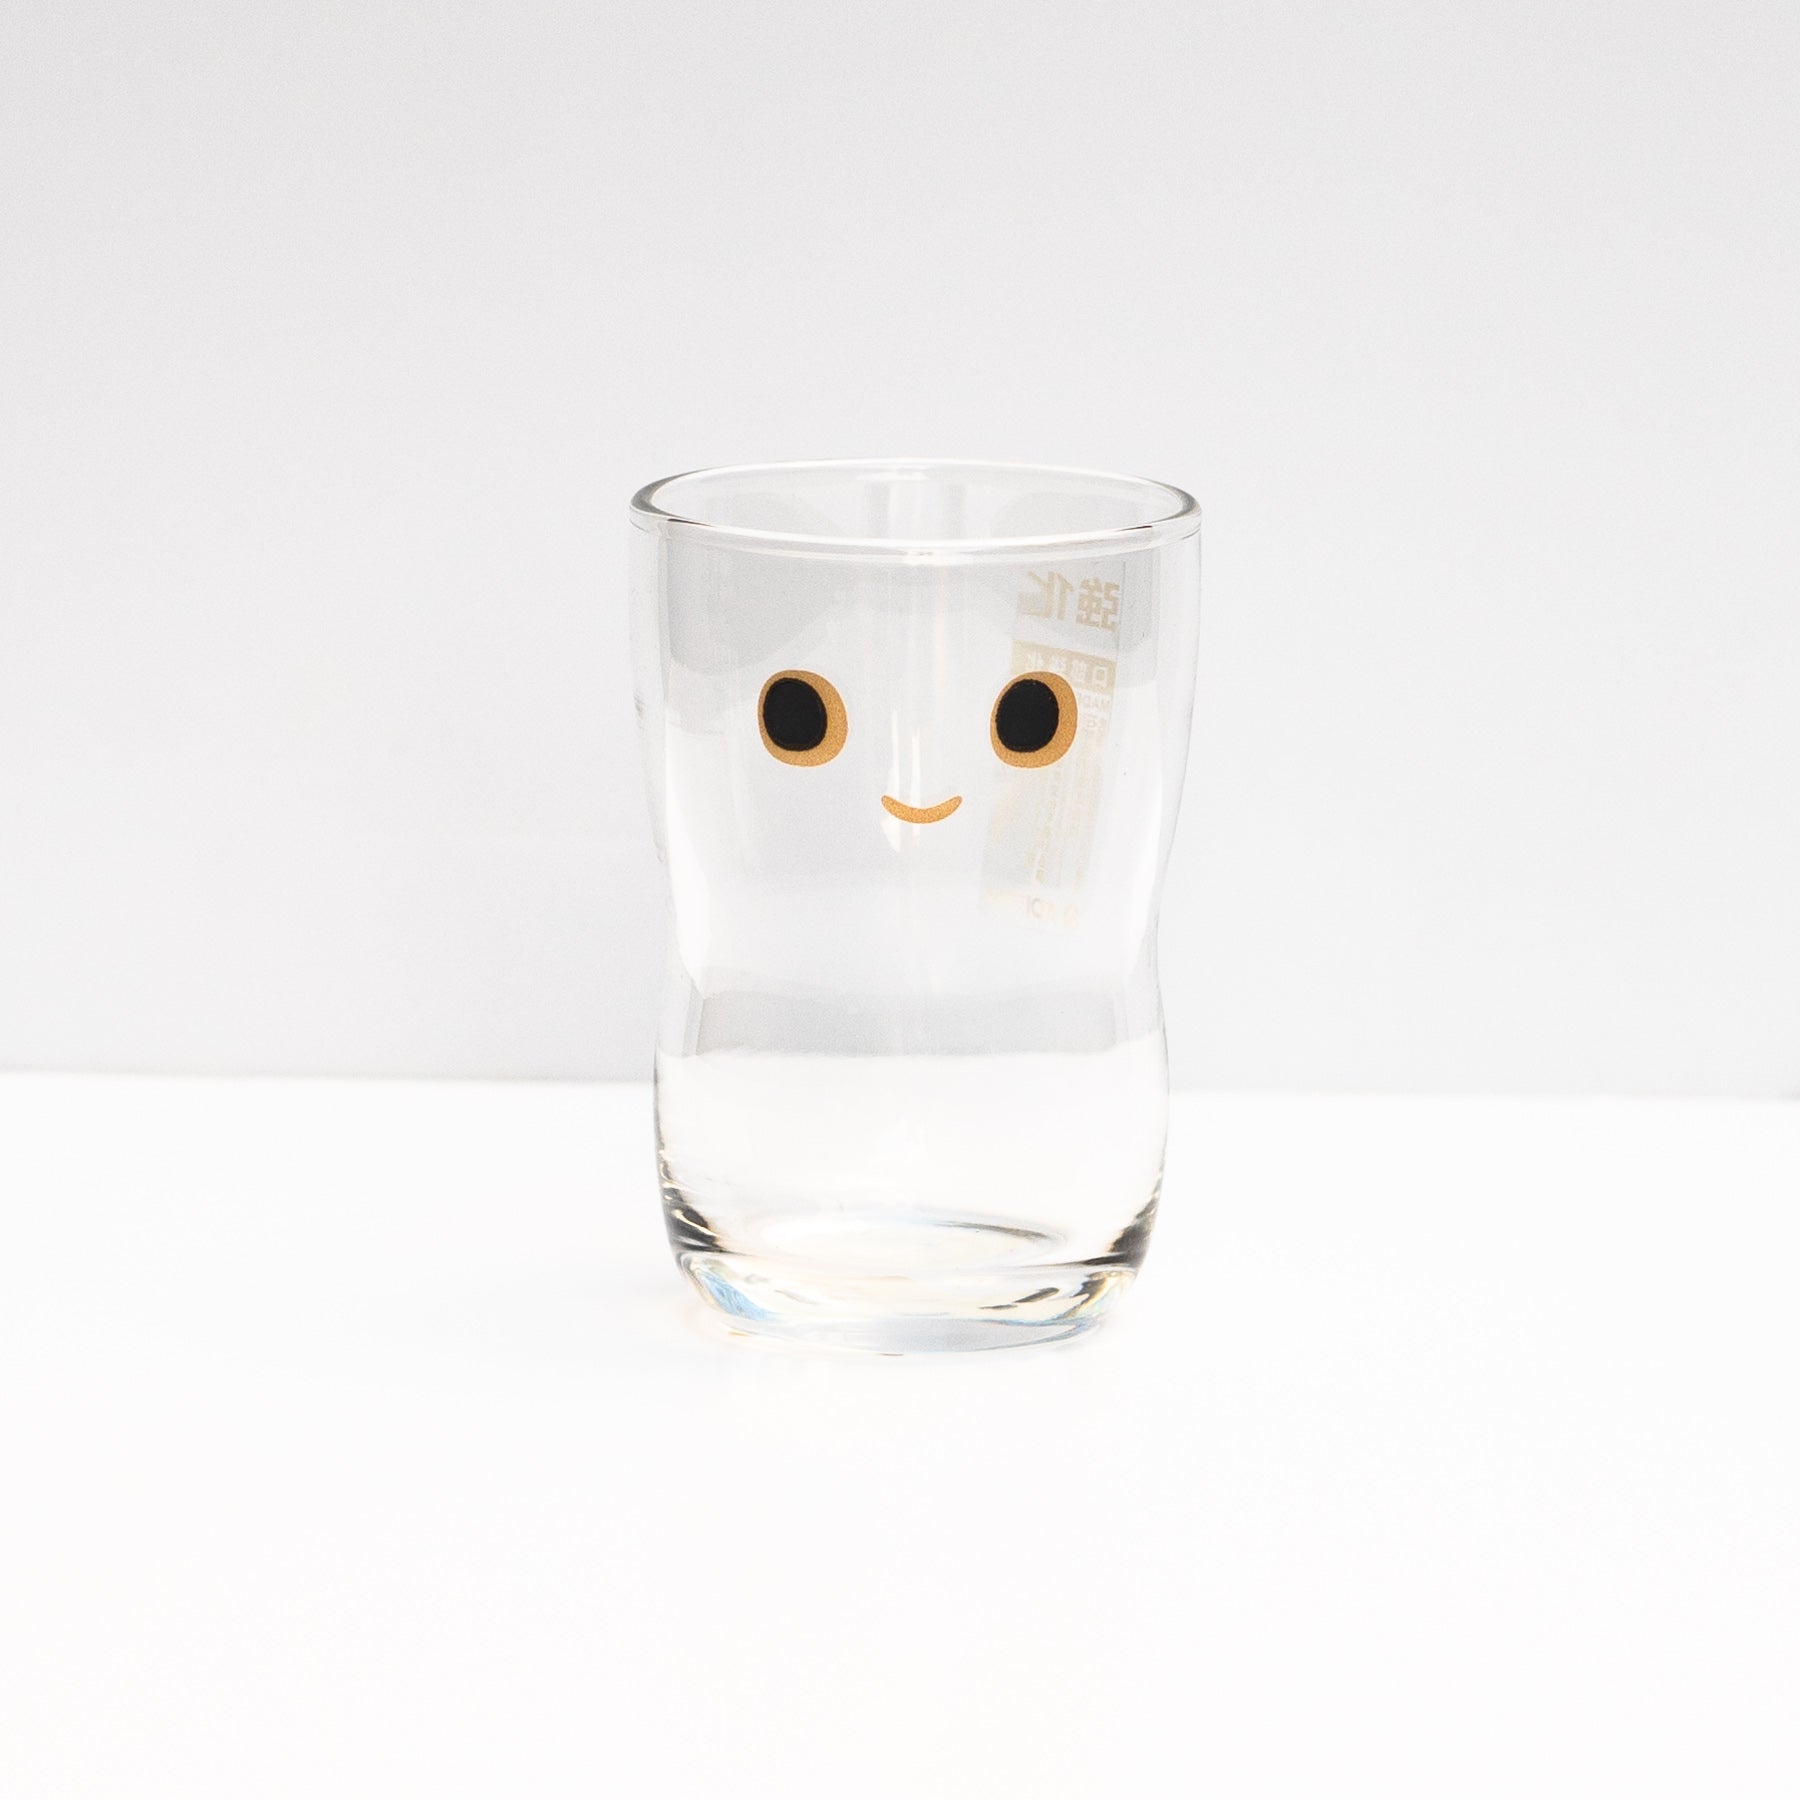 Japanese kids glass with face print by IIshizuka Glassshu